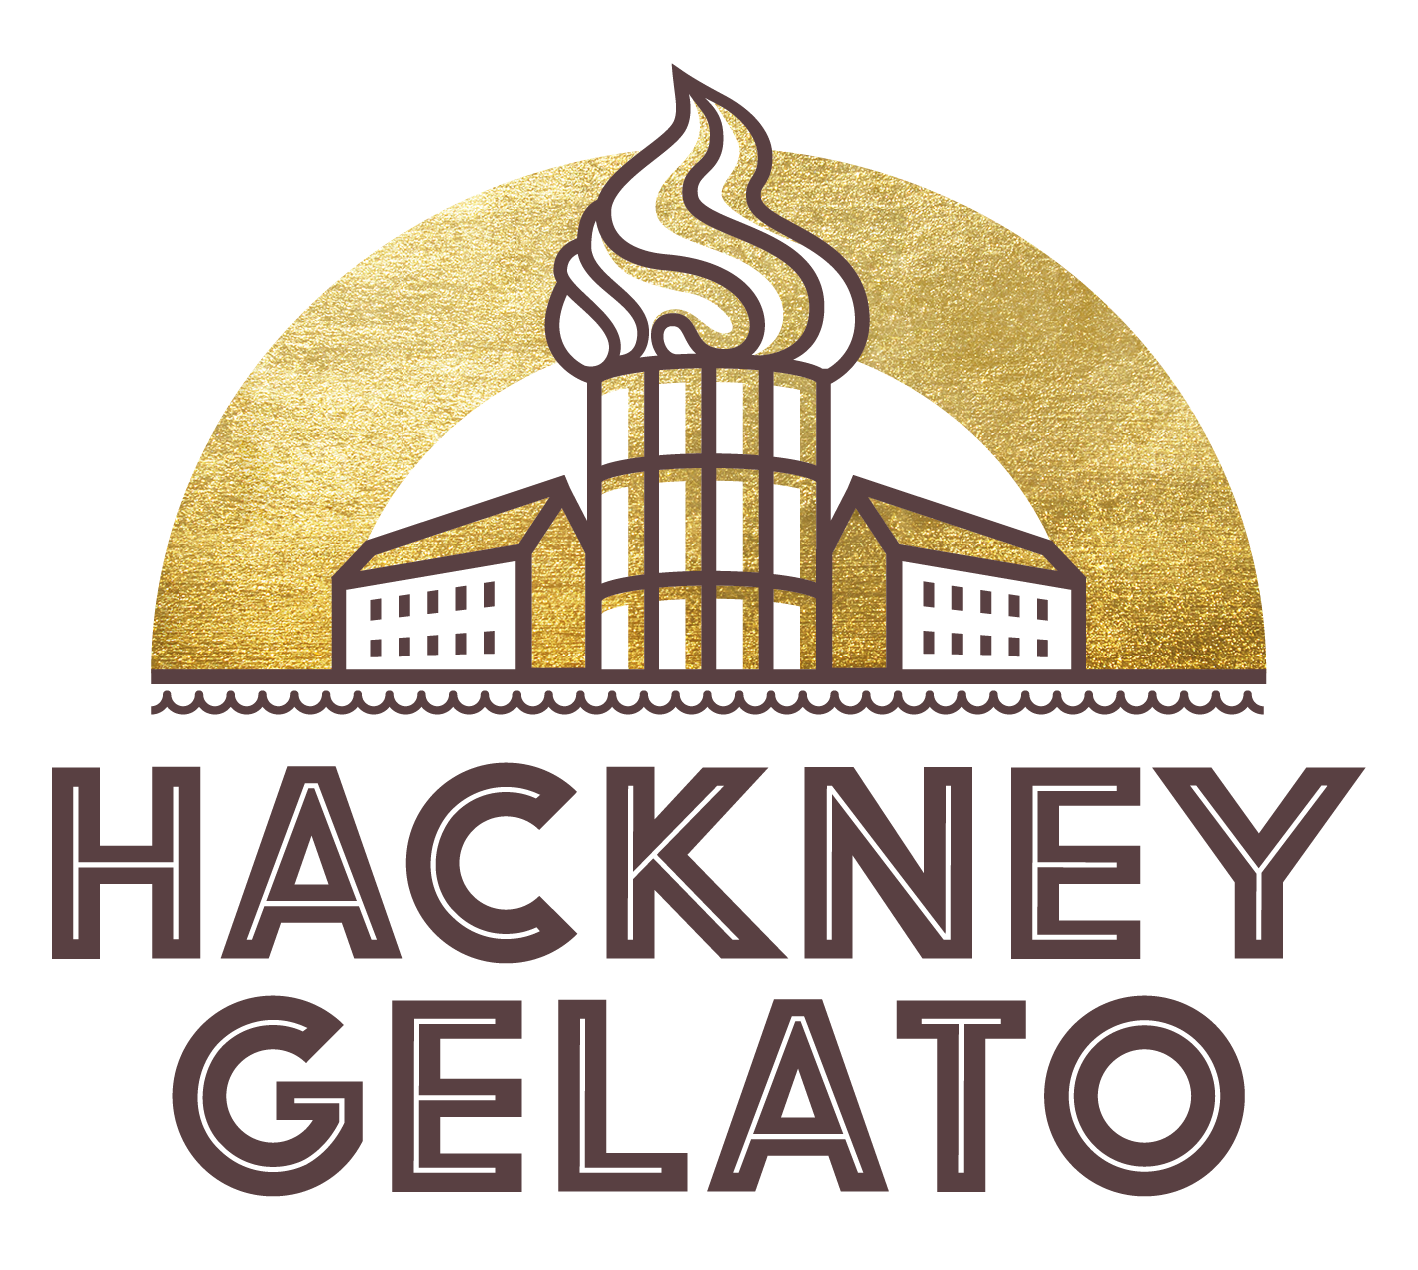 Hackney Gelato